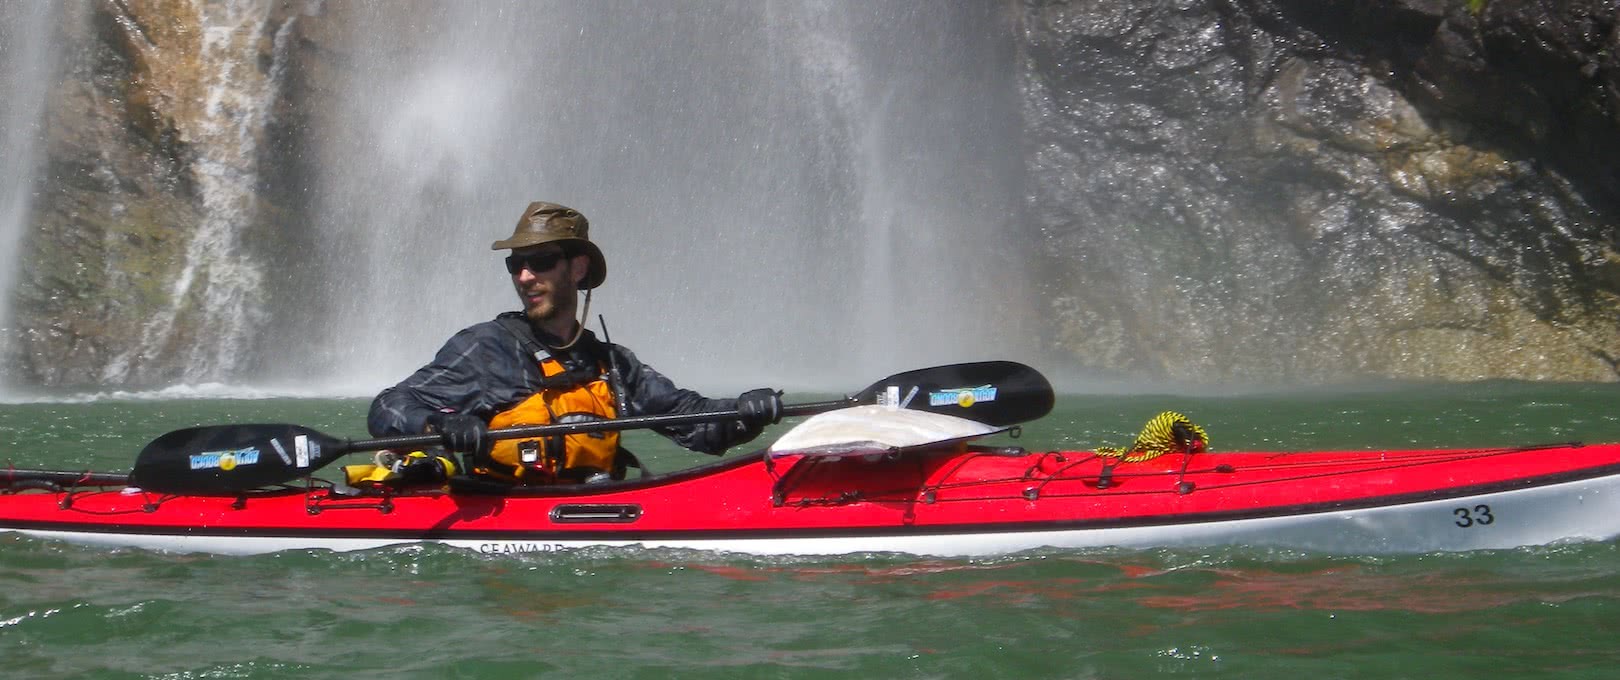 man in red kayak near waterfall